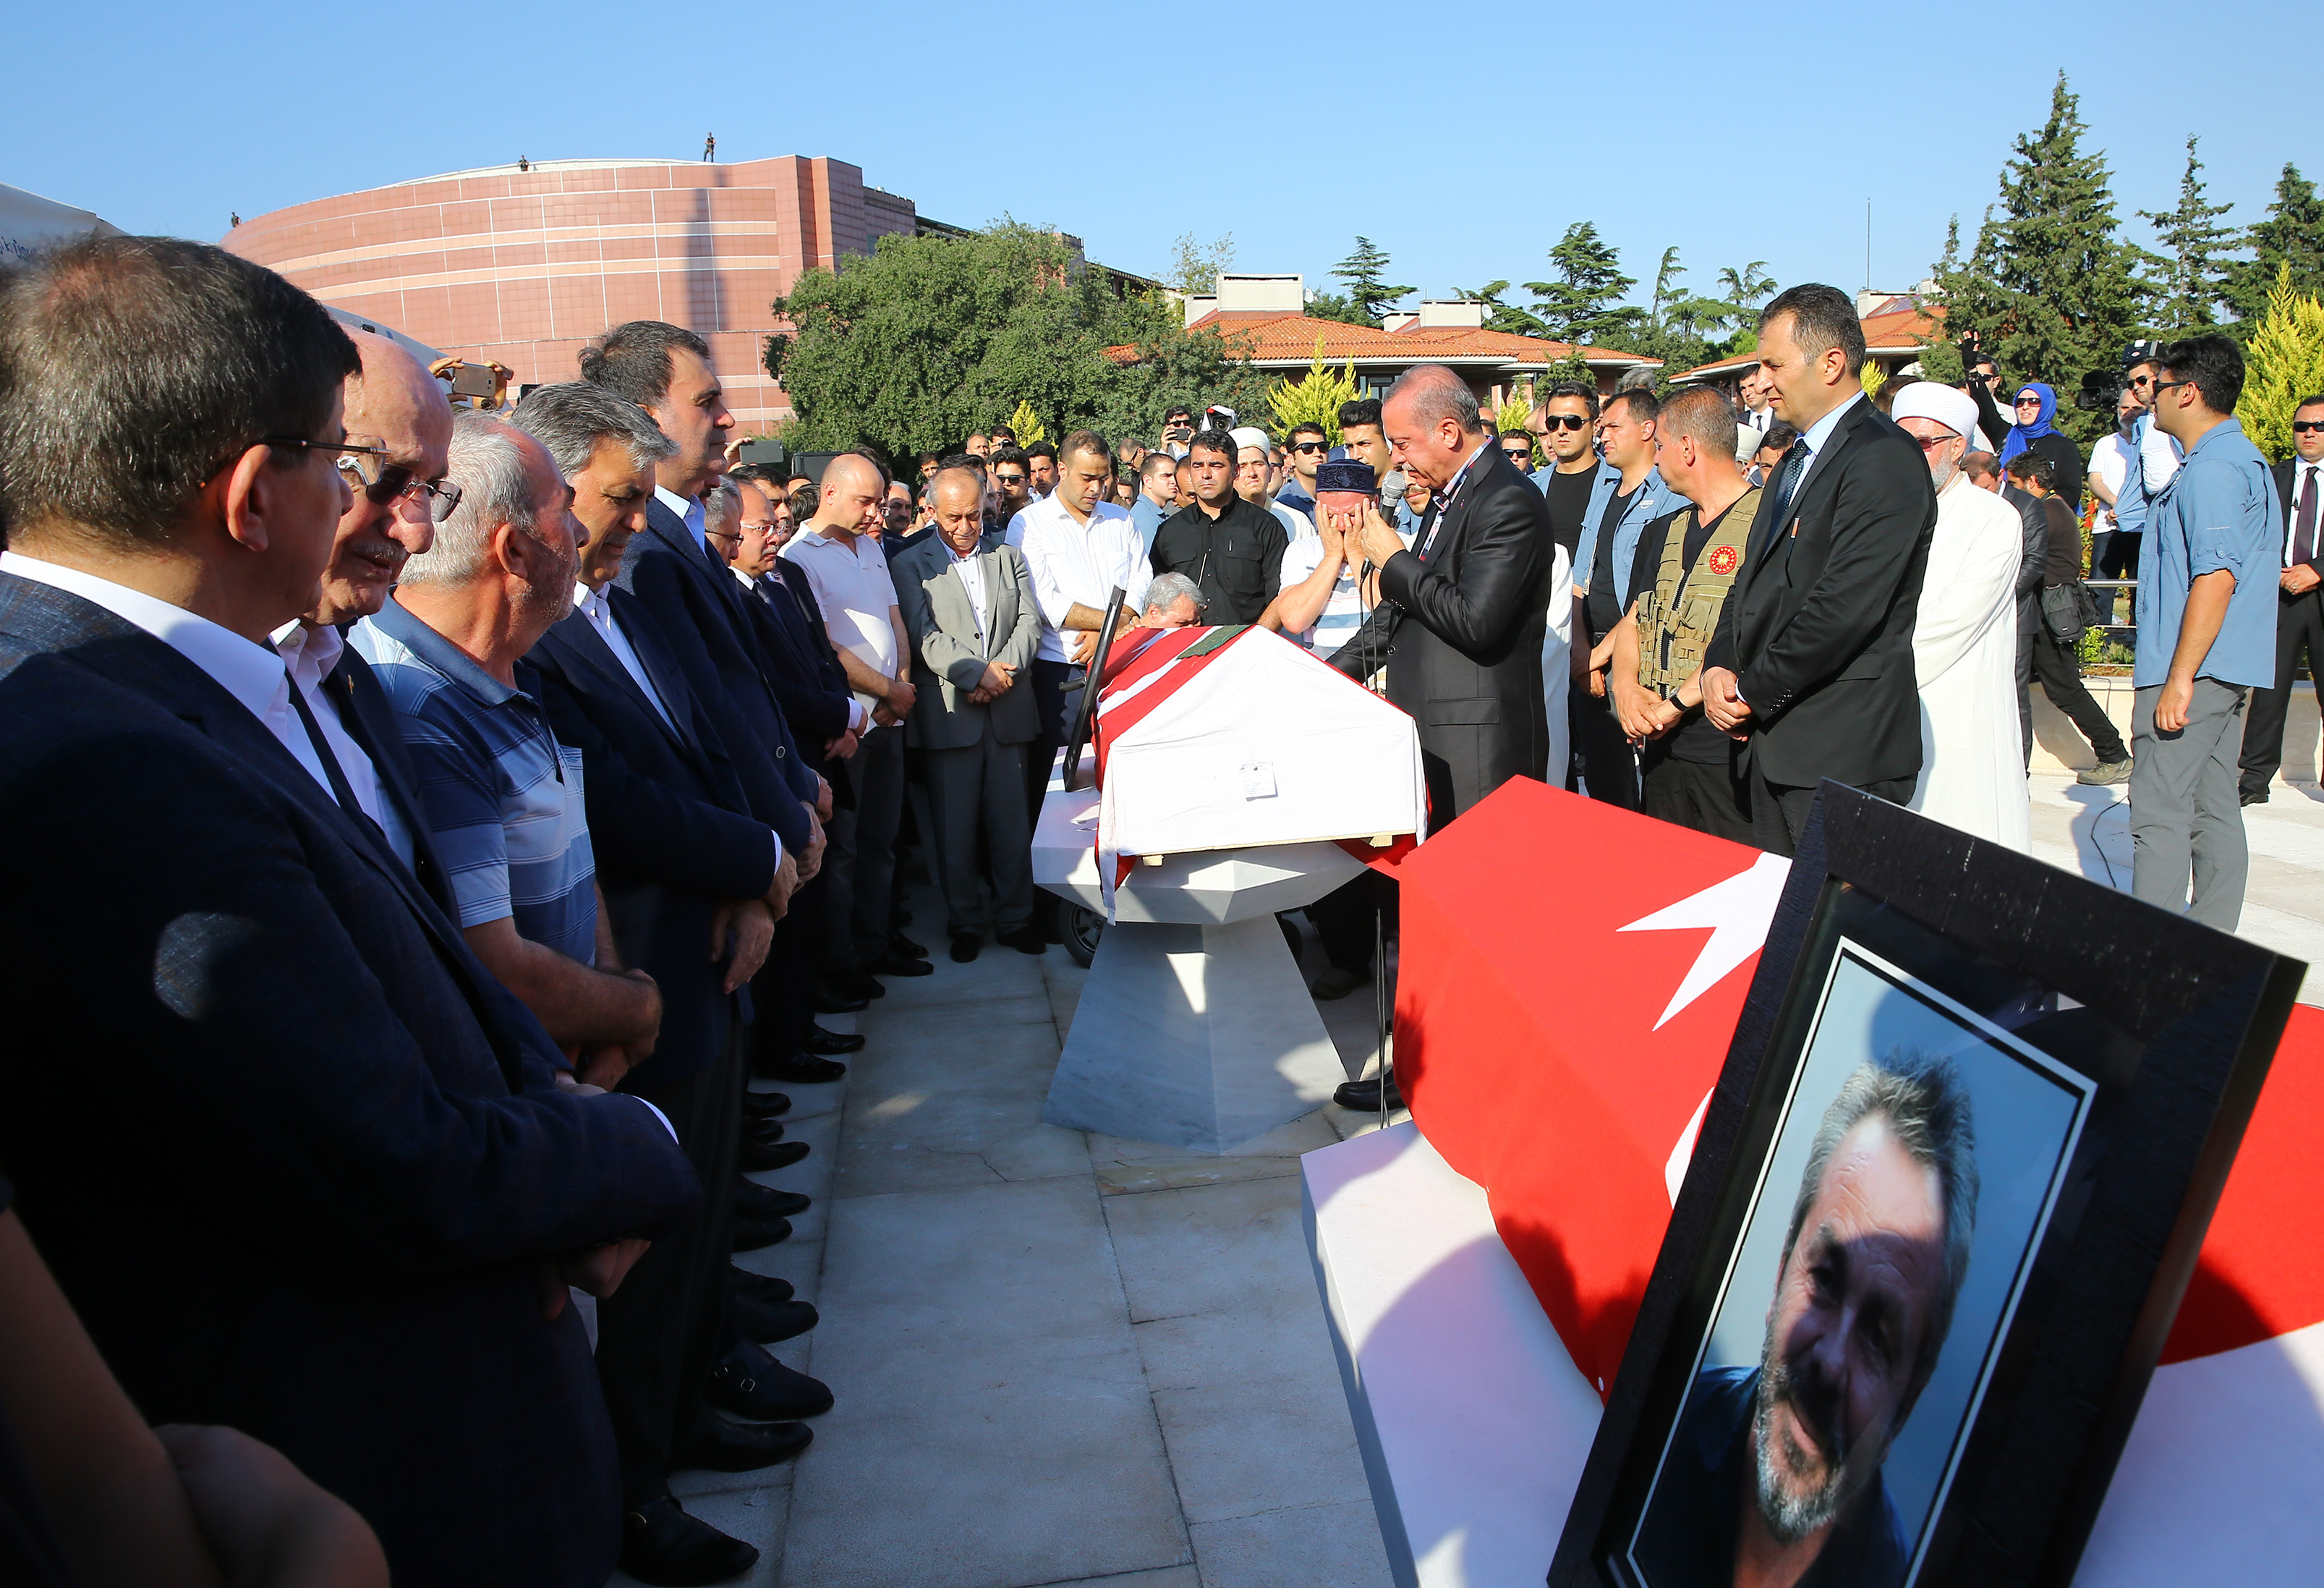 أُقيمت صلاة الجنازة على شهداء 15 يوليو/تموز مصطفى جمباظ، أرول اولجوك، وعبدالله طيب أولجوك في مسجد كلية الإلهيات بجامعة مرمرة.